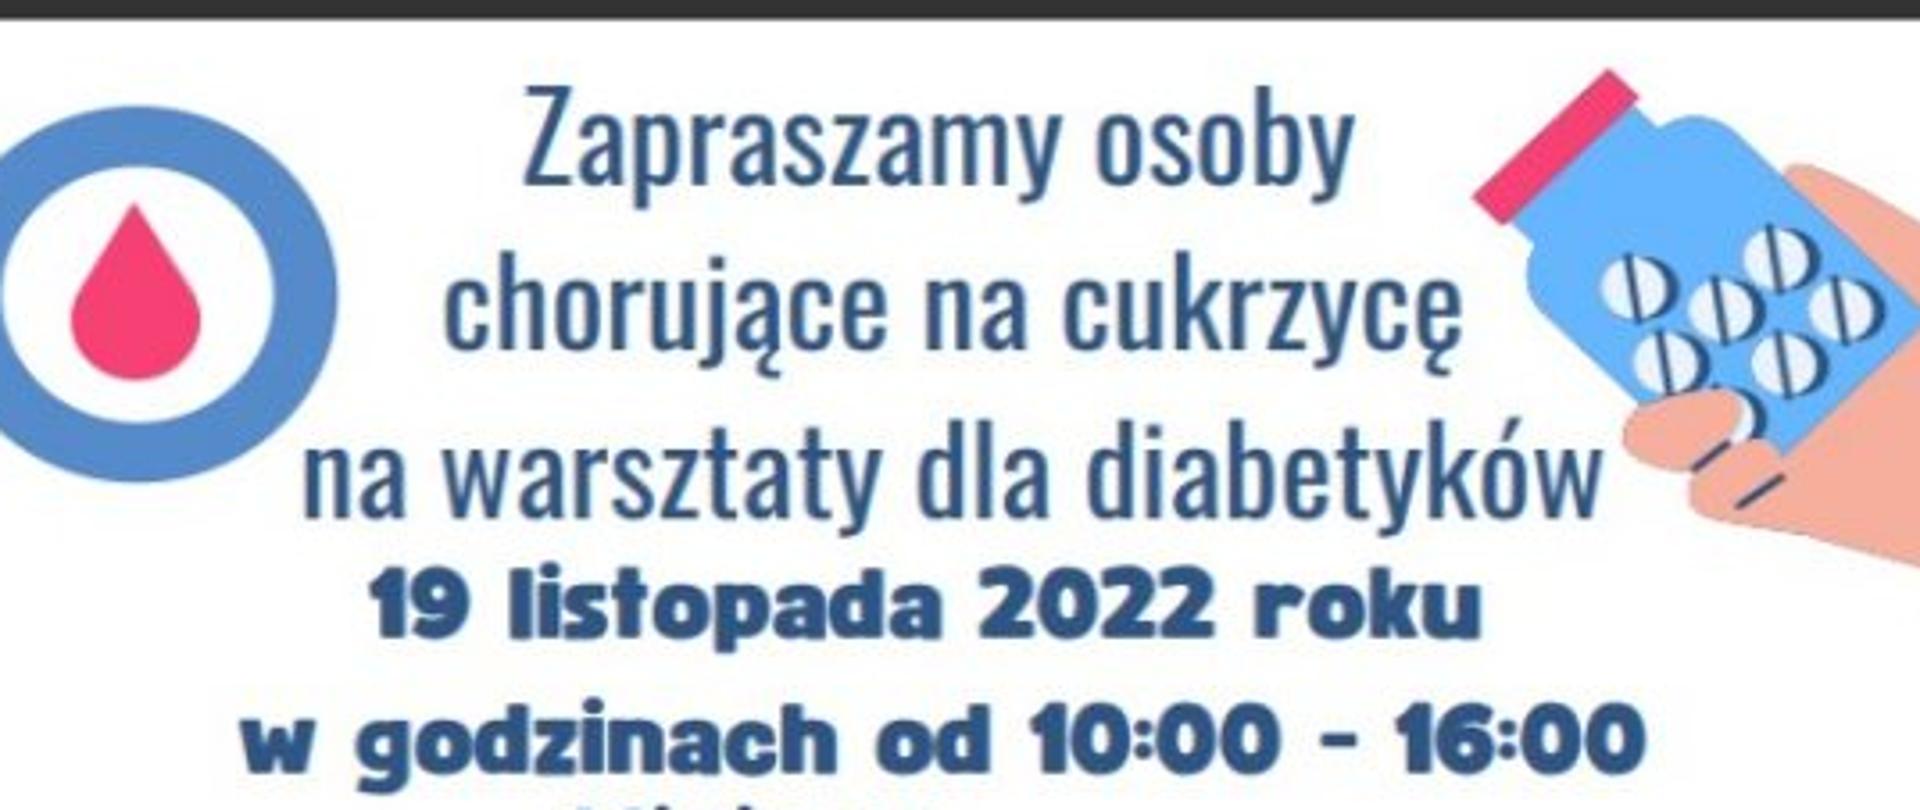 Zaproszenie na warsztaty dla diabetyków w Mrągowie 